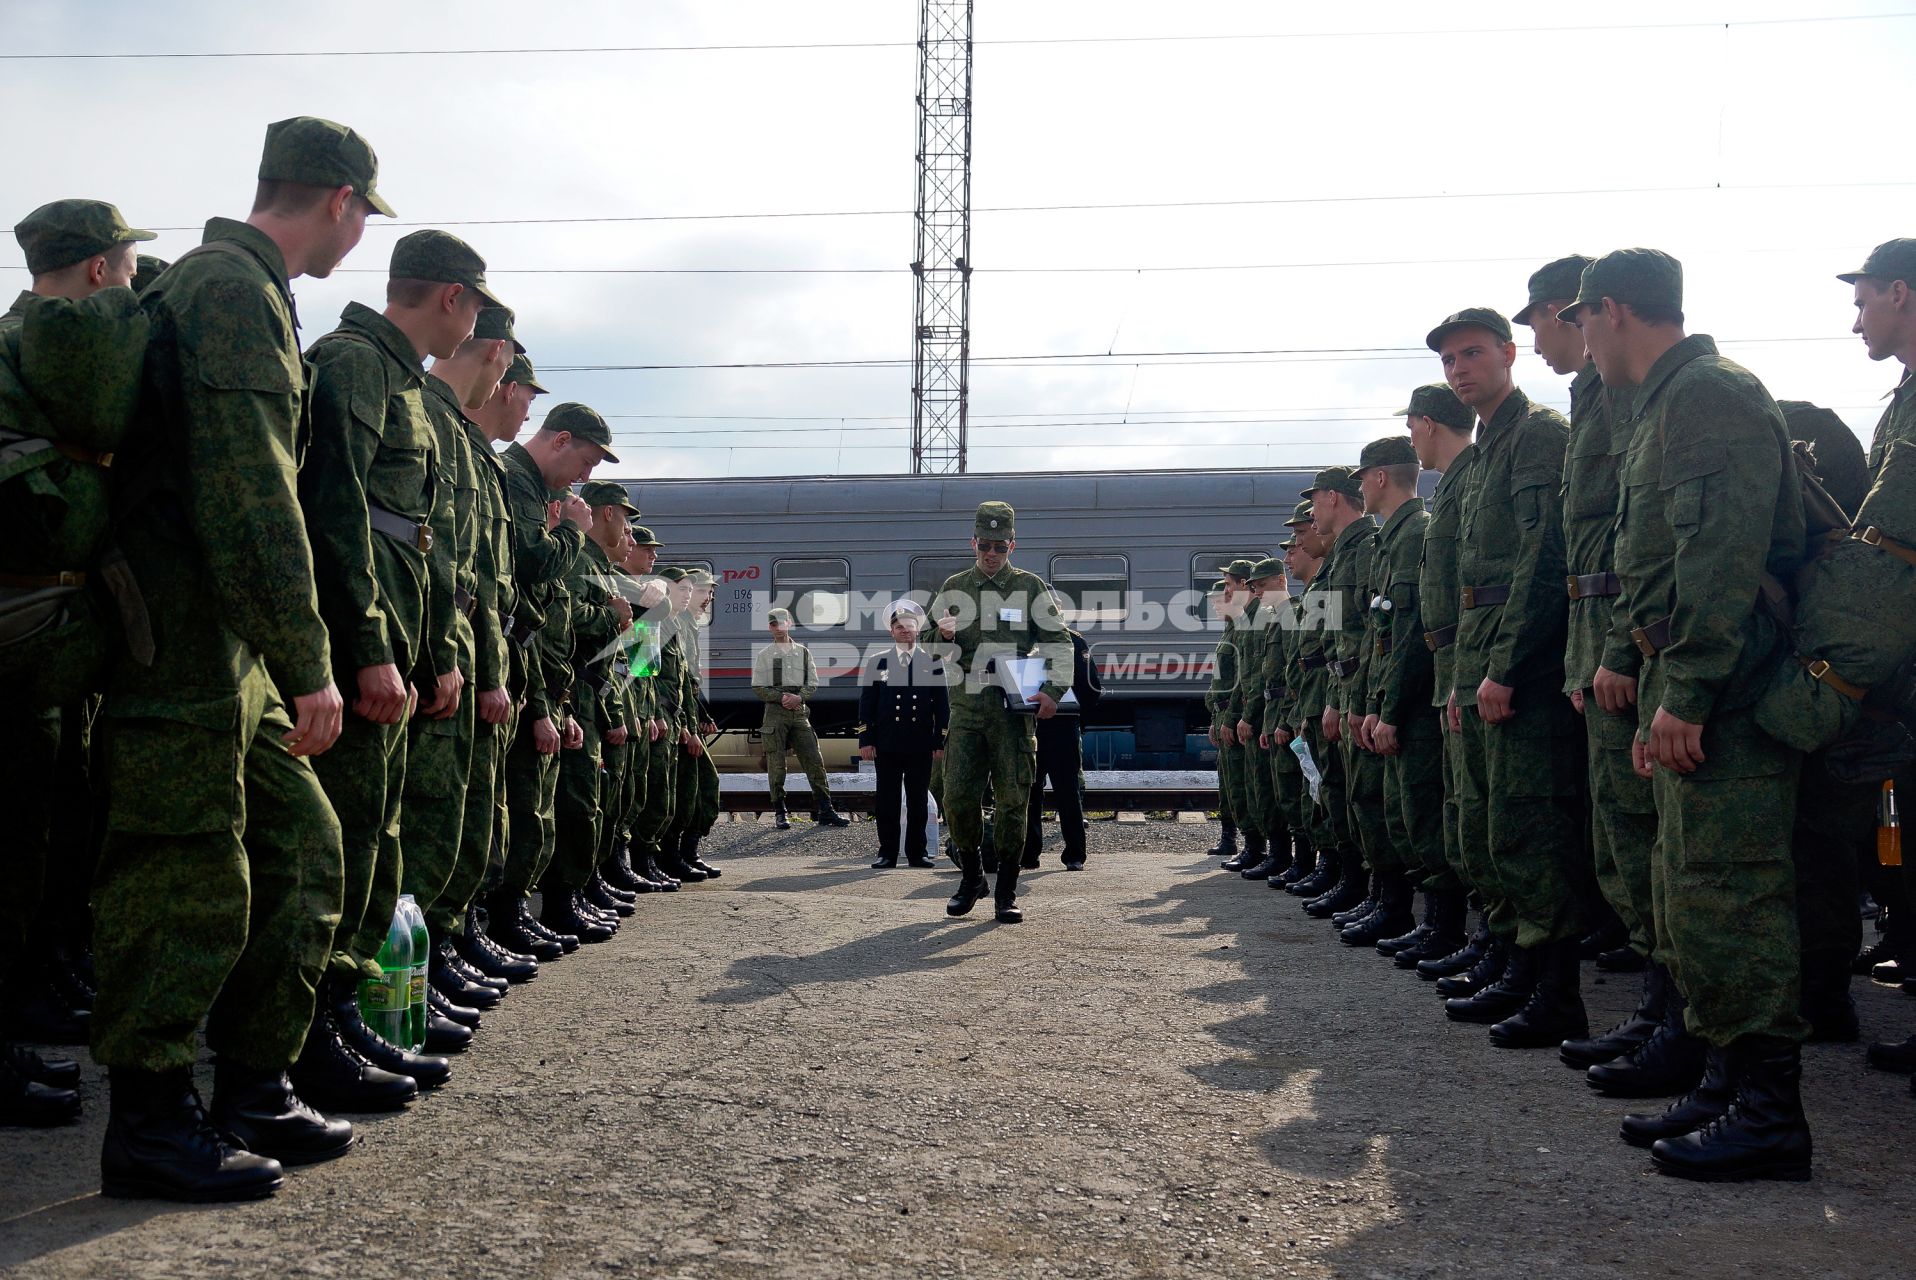 Офицер проходит вдоль строя солдат стоящих перед поездом на вокзале.